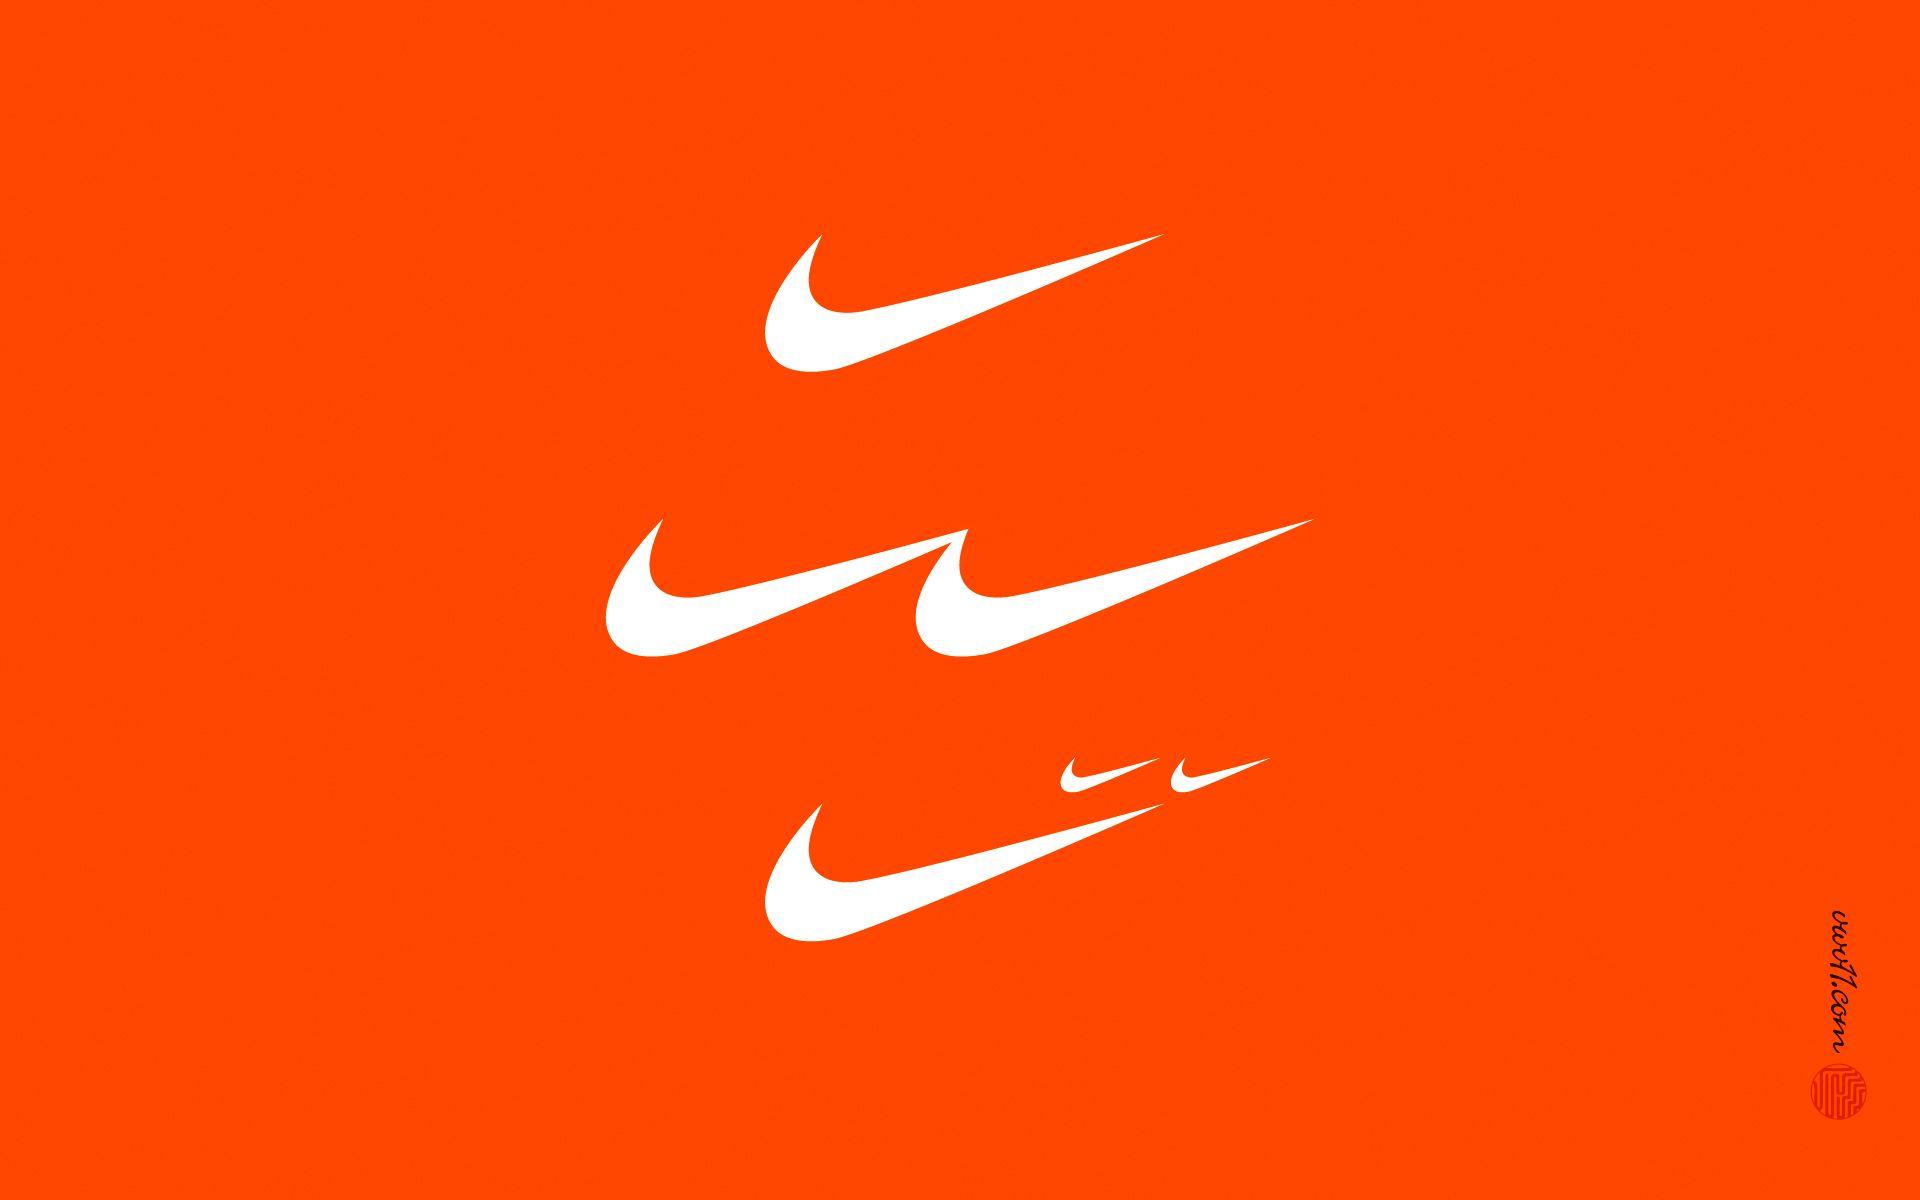 Tổng hợp 999 Nike logo orange background với giao diện cực chất